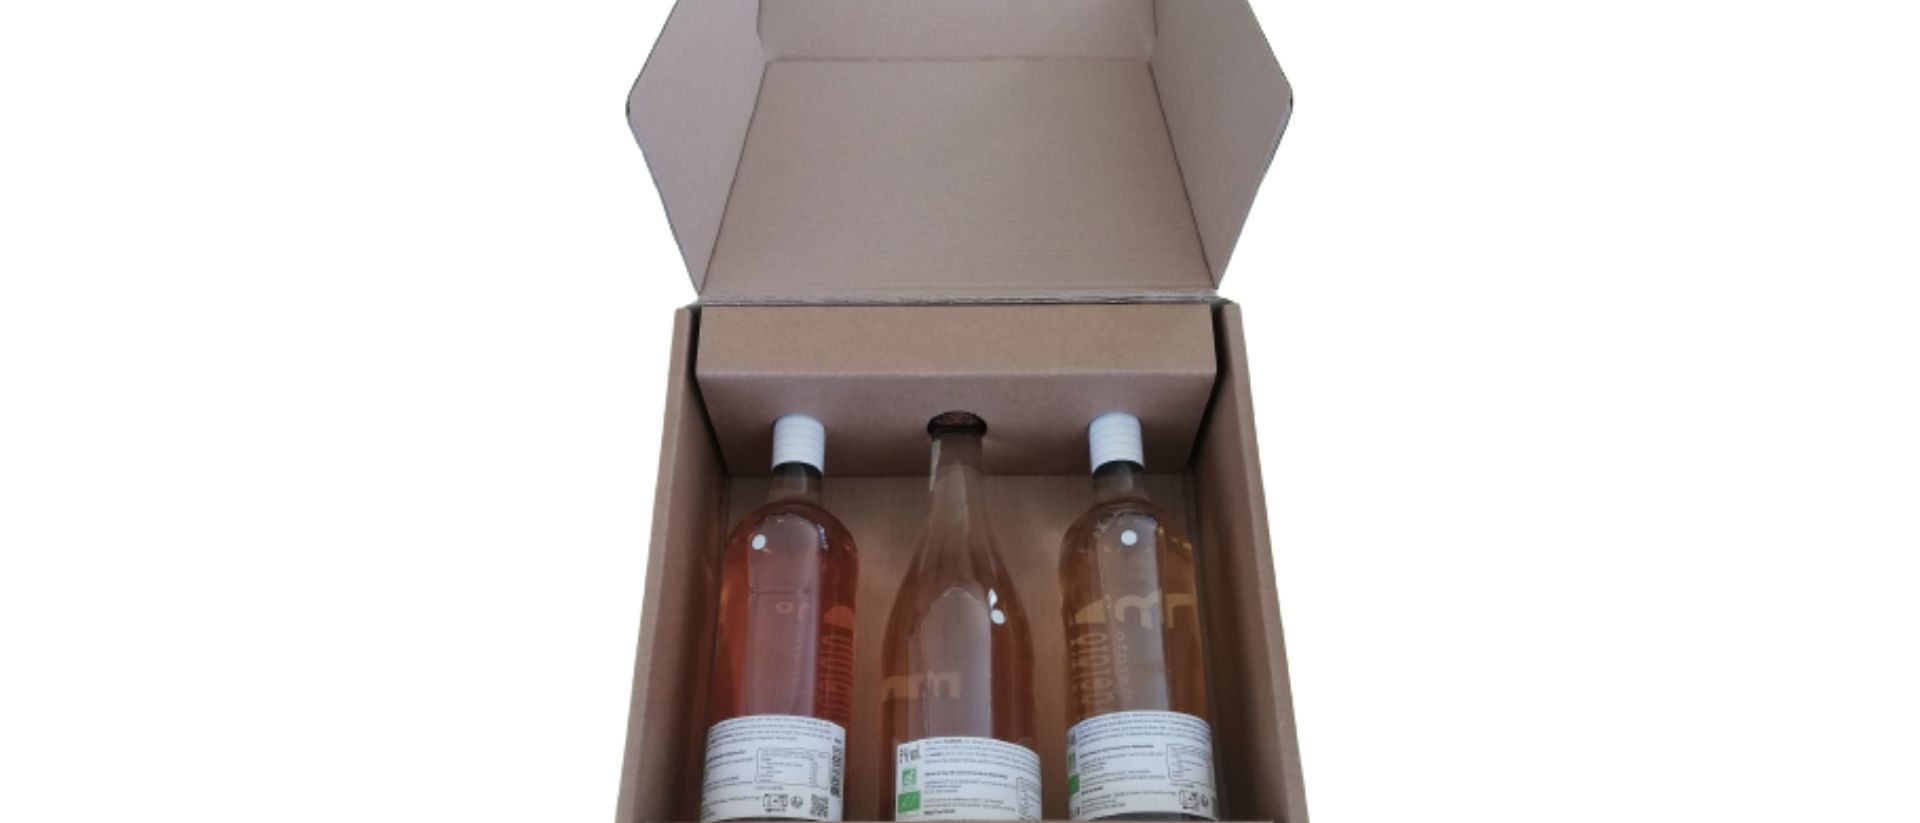 coffret emballage carton e-commerce 3 bouteilles